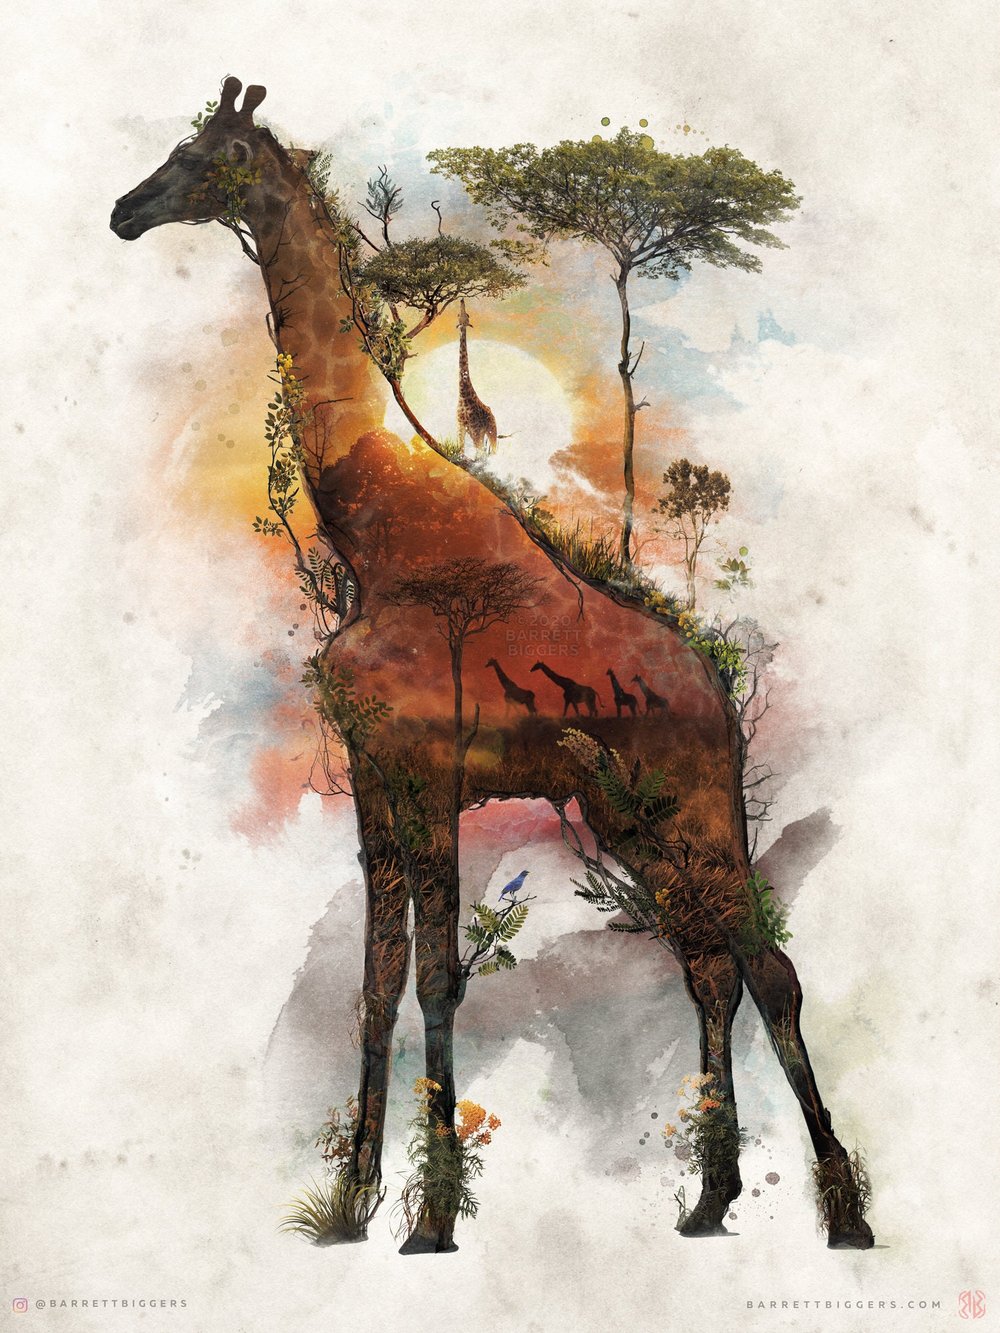 Giraffe T-shirt - Animal Illustration Wild Life T shirt - Animal